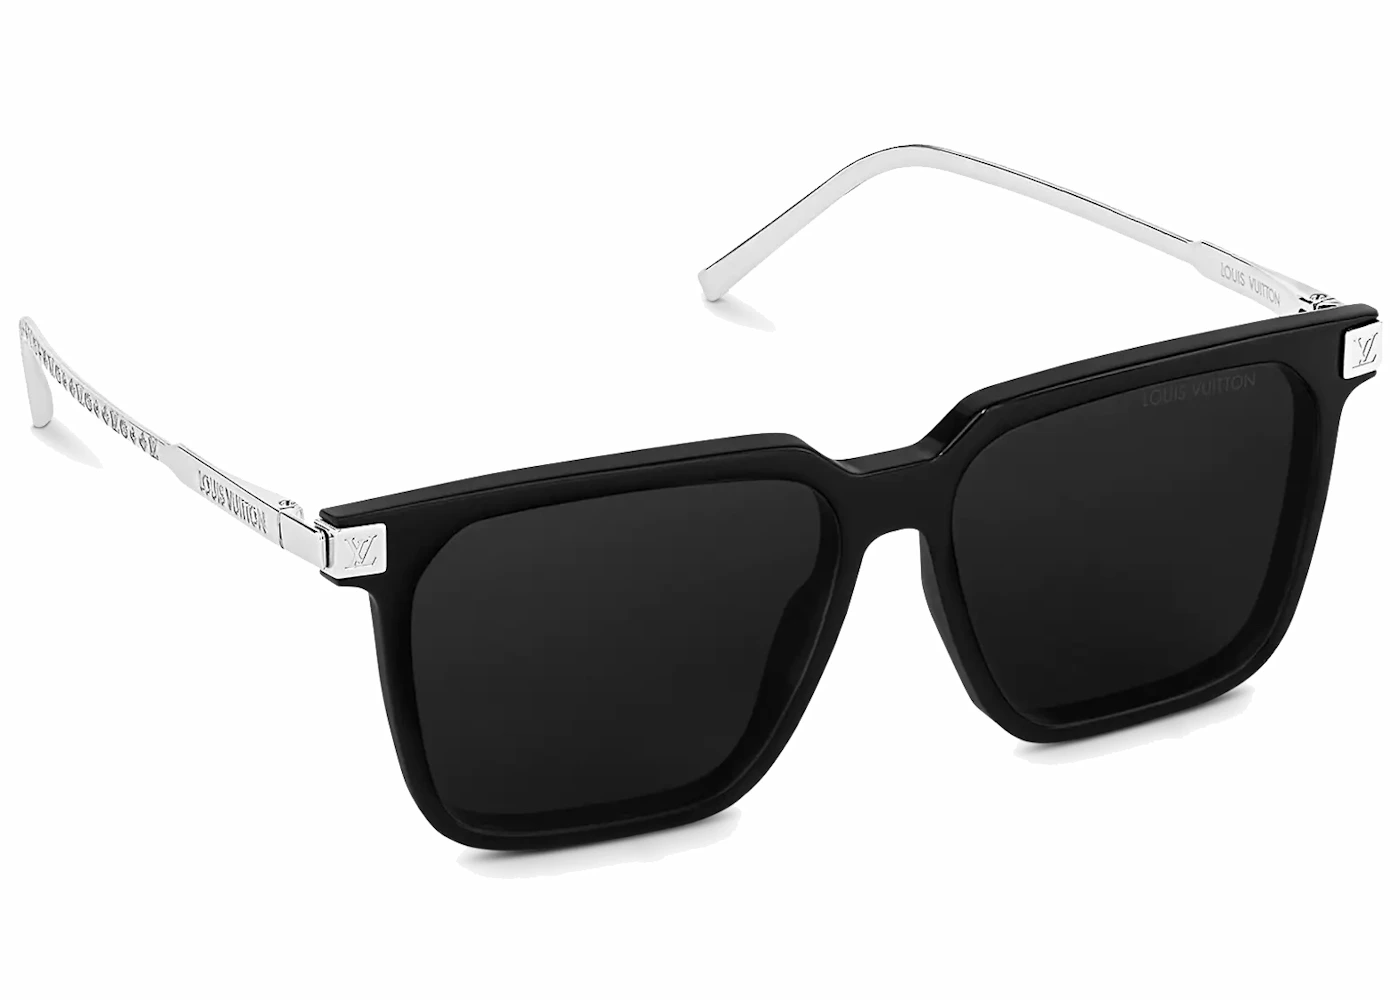 Anemone fisk produktion Defekt Louis Vuitton LV Rise Square Sunglasses Black/Silver in Acetate - US